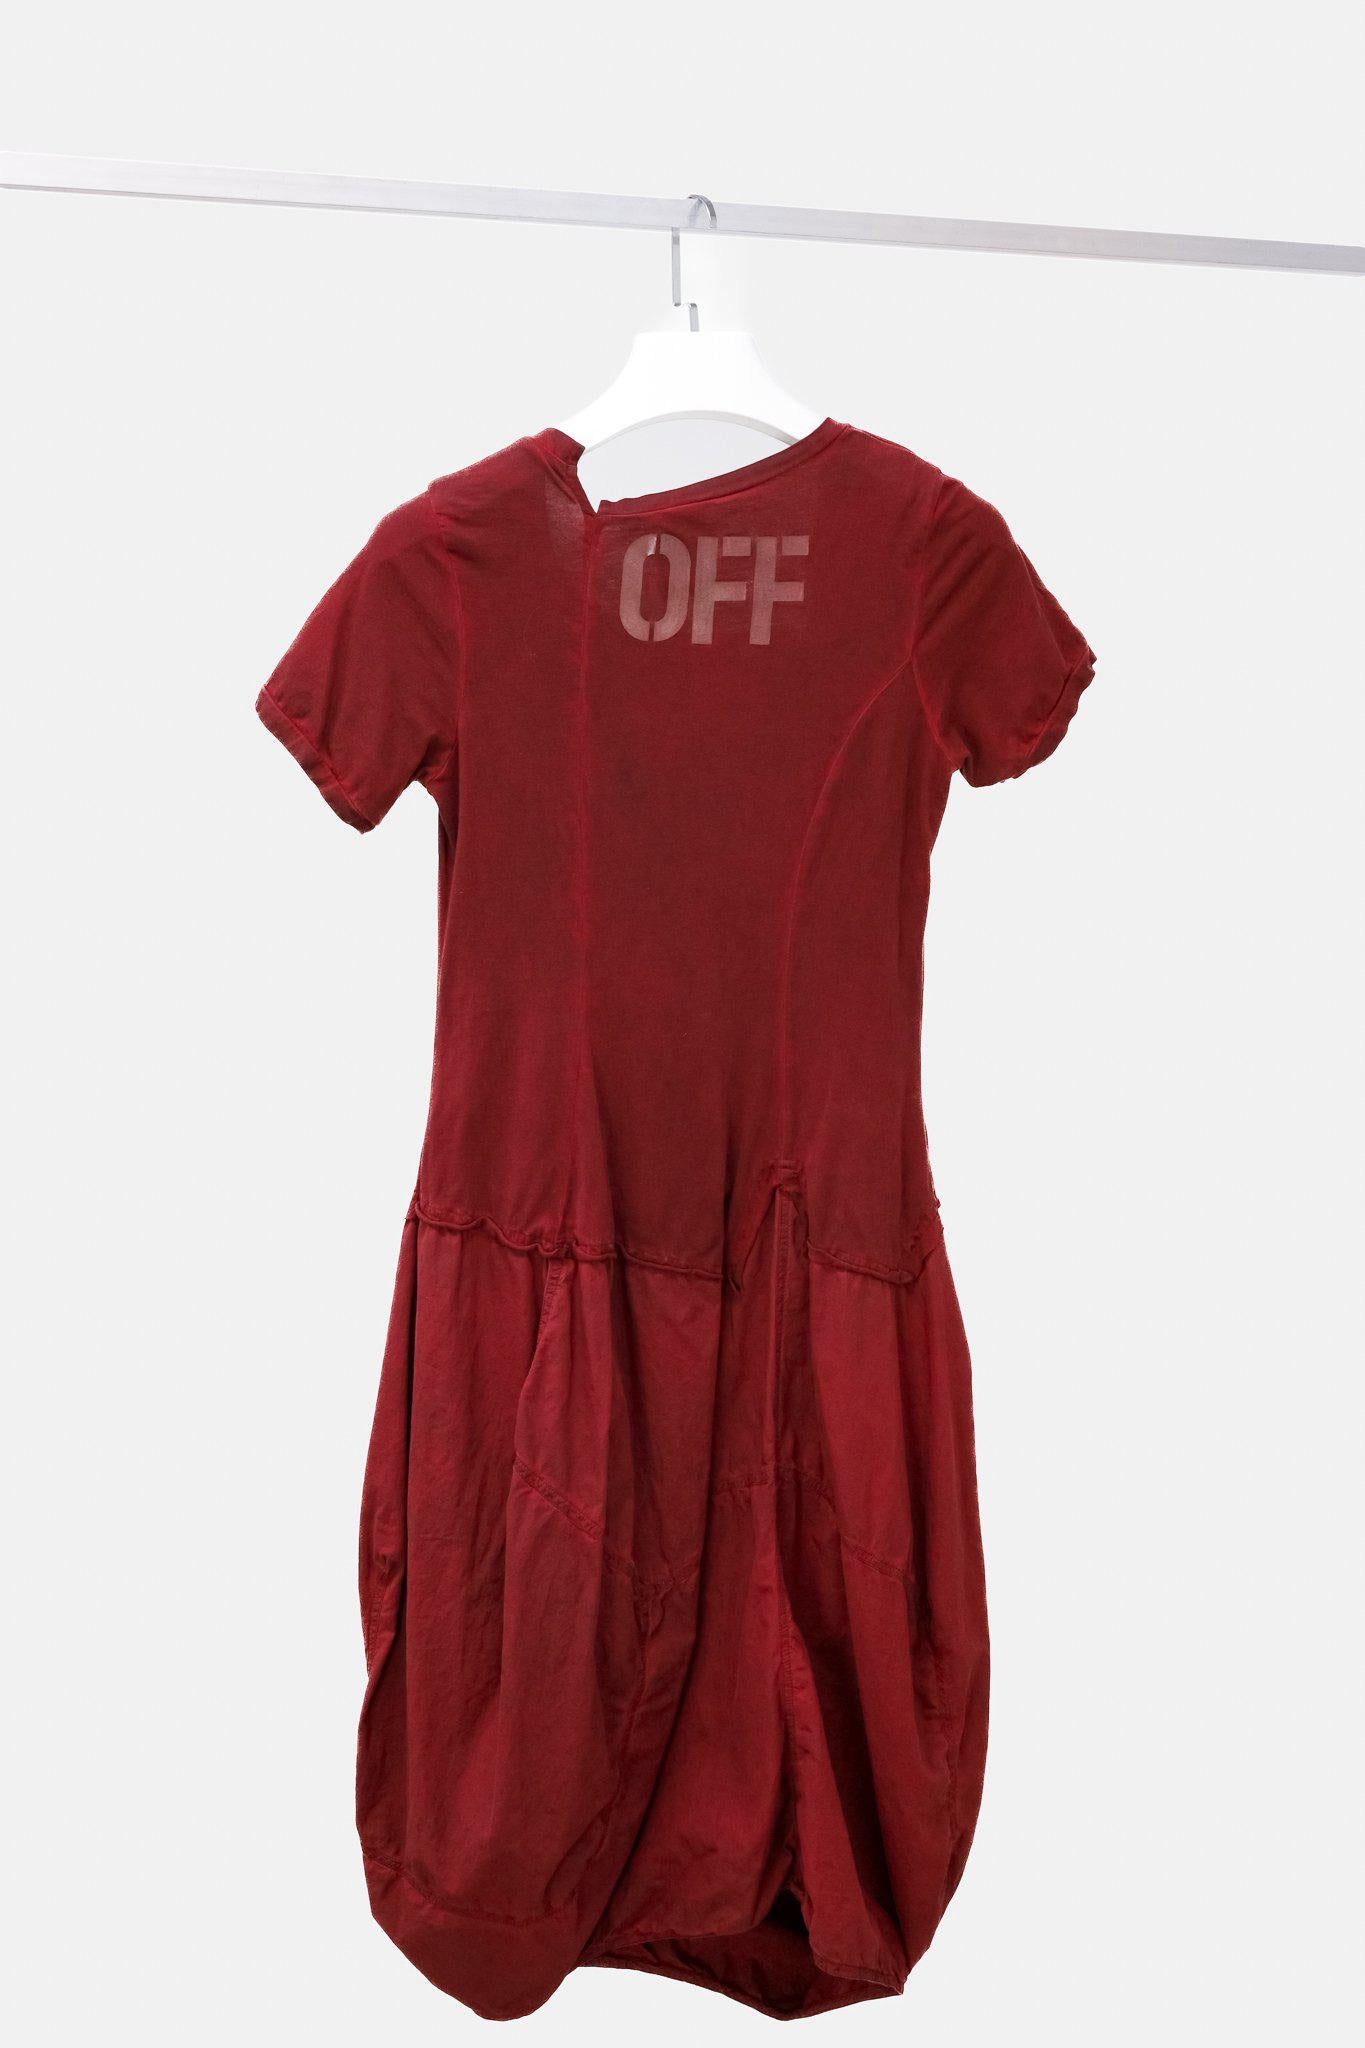 Rundholz Red "OFF" Dress